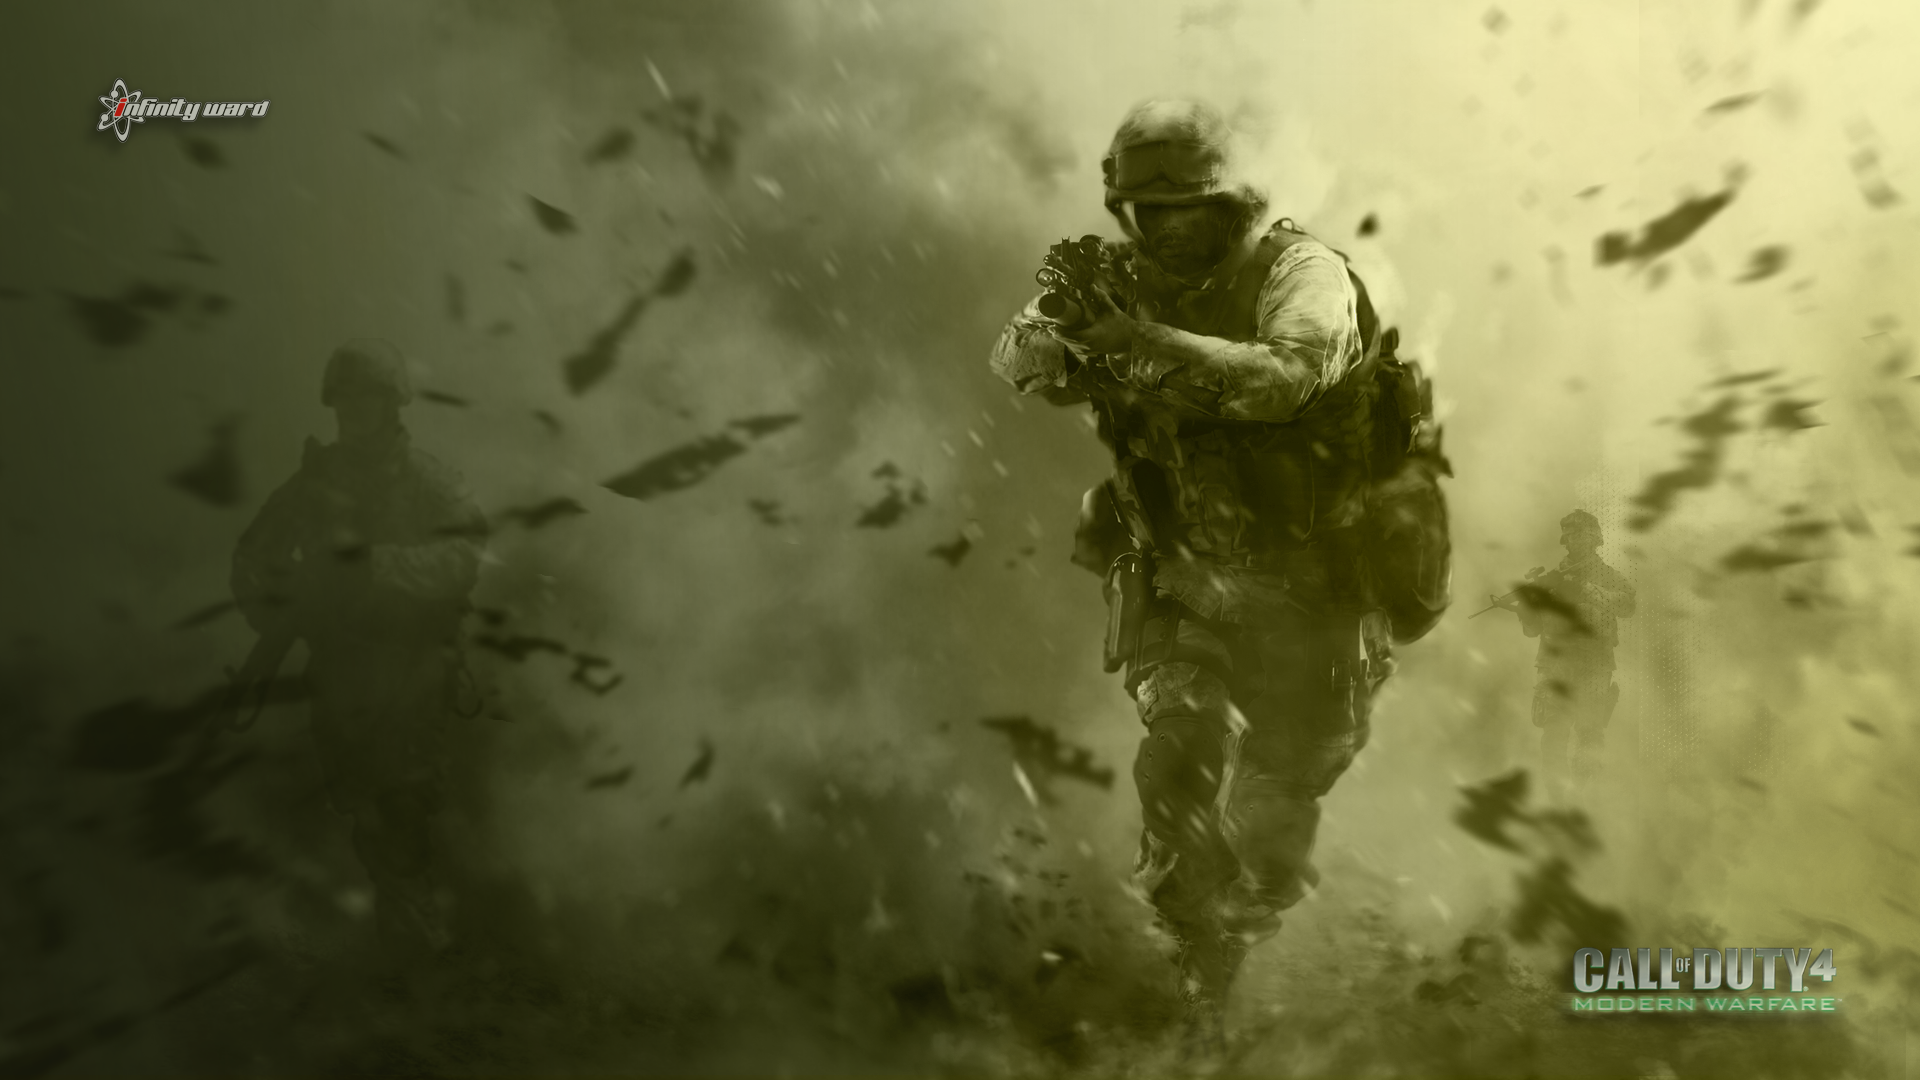 Tải về những hình nền HD của Call of Duty đẹp nhất để thể hiện sự yêu thích của bạn với trò chơi này. Với đồ họa chân thực và sắc nét, các hình nền sẽ khiến màn hình của bạn trở nên sống động hơn cả.